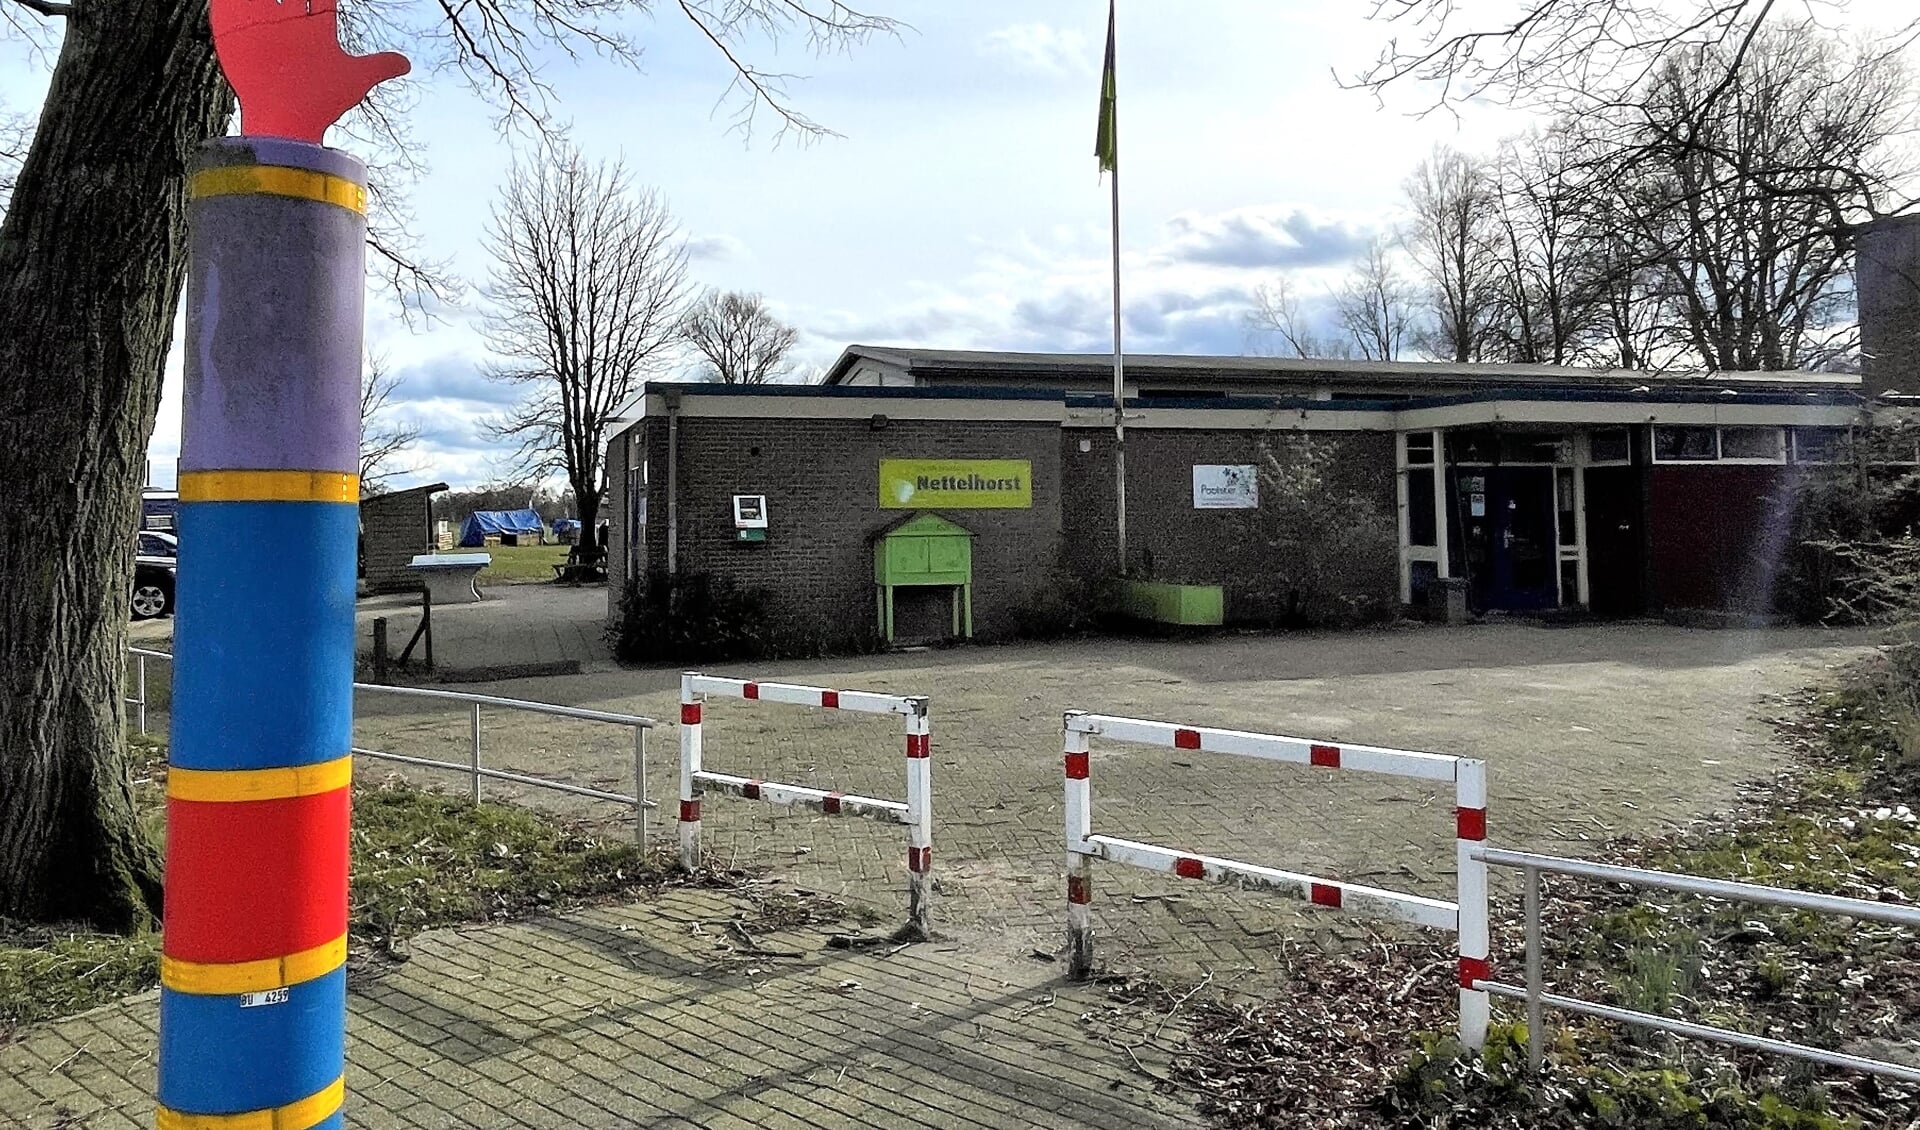 De Daltonbasisschool in Nettelhorst heeft meer leerlingen nodig om te kunnen voortbestaan. Foto: Henri Bruntink